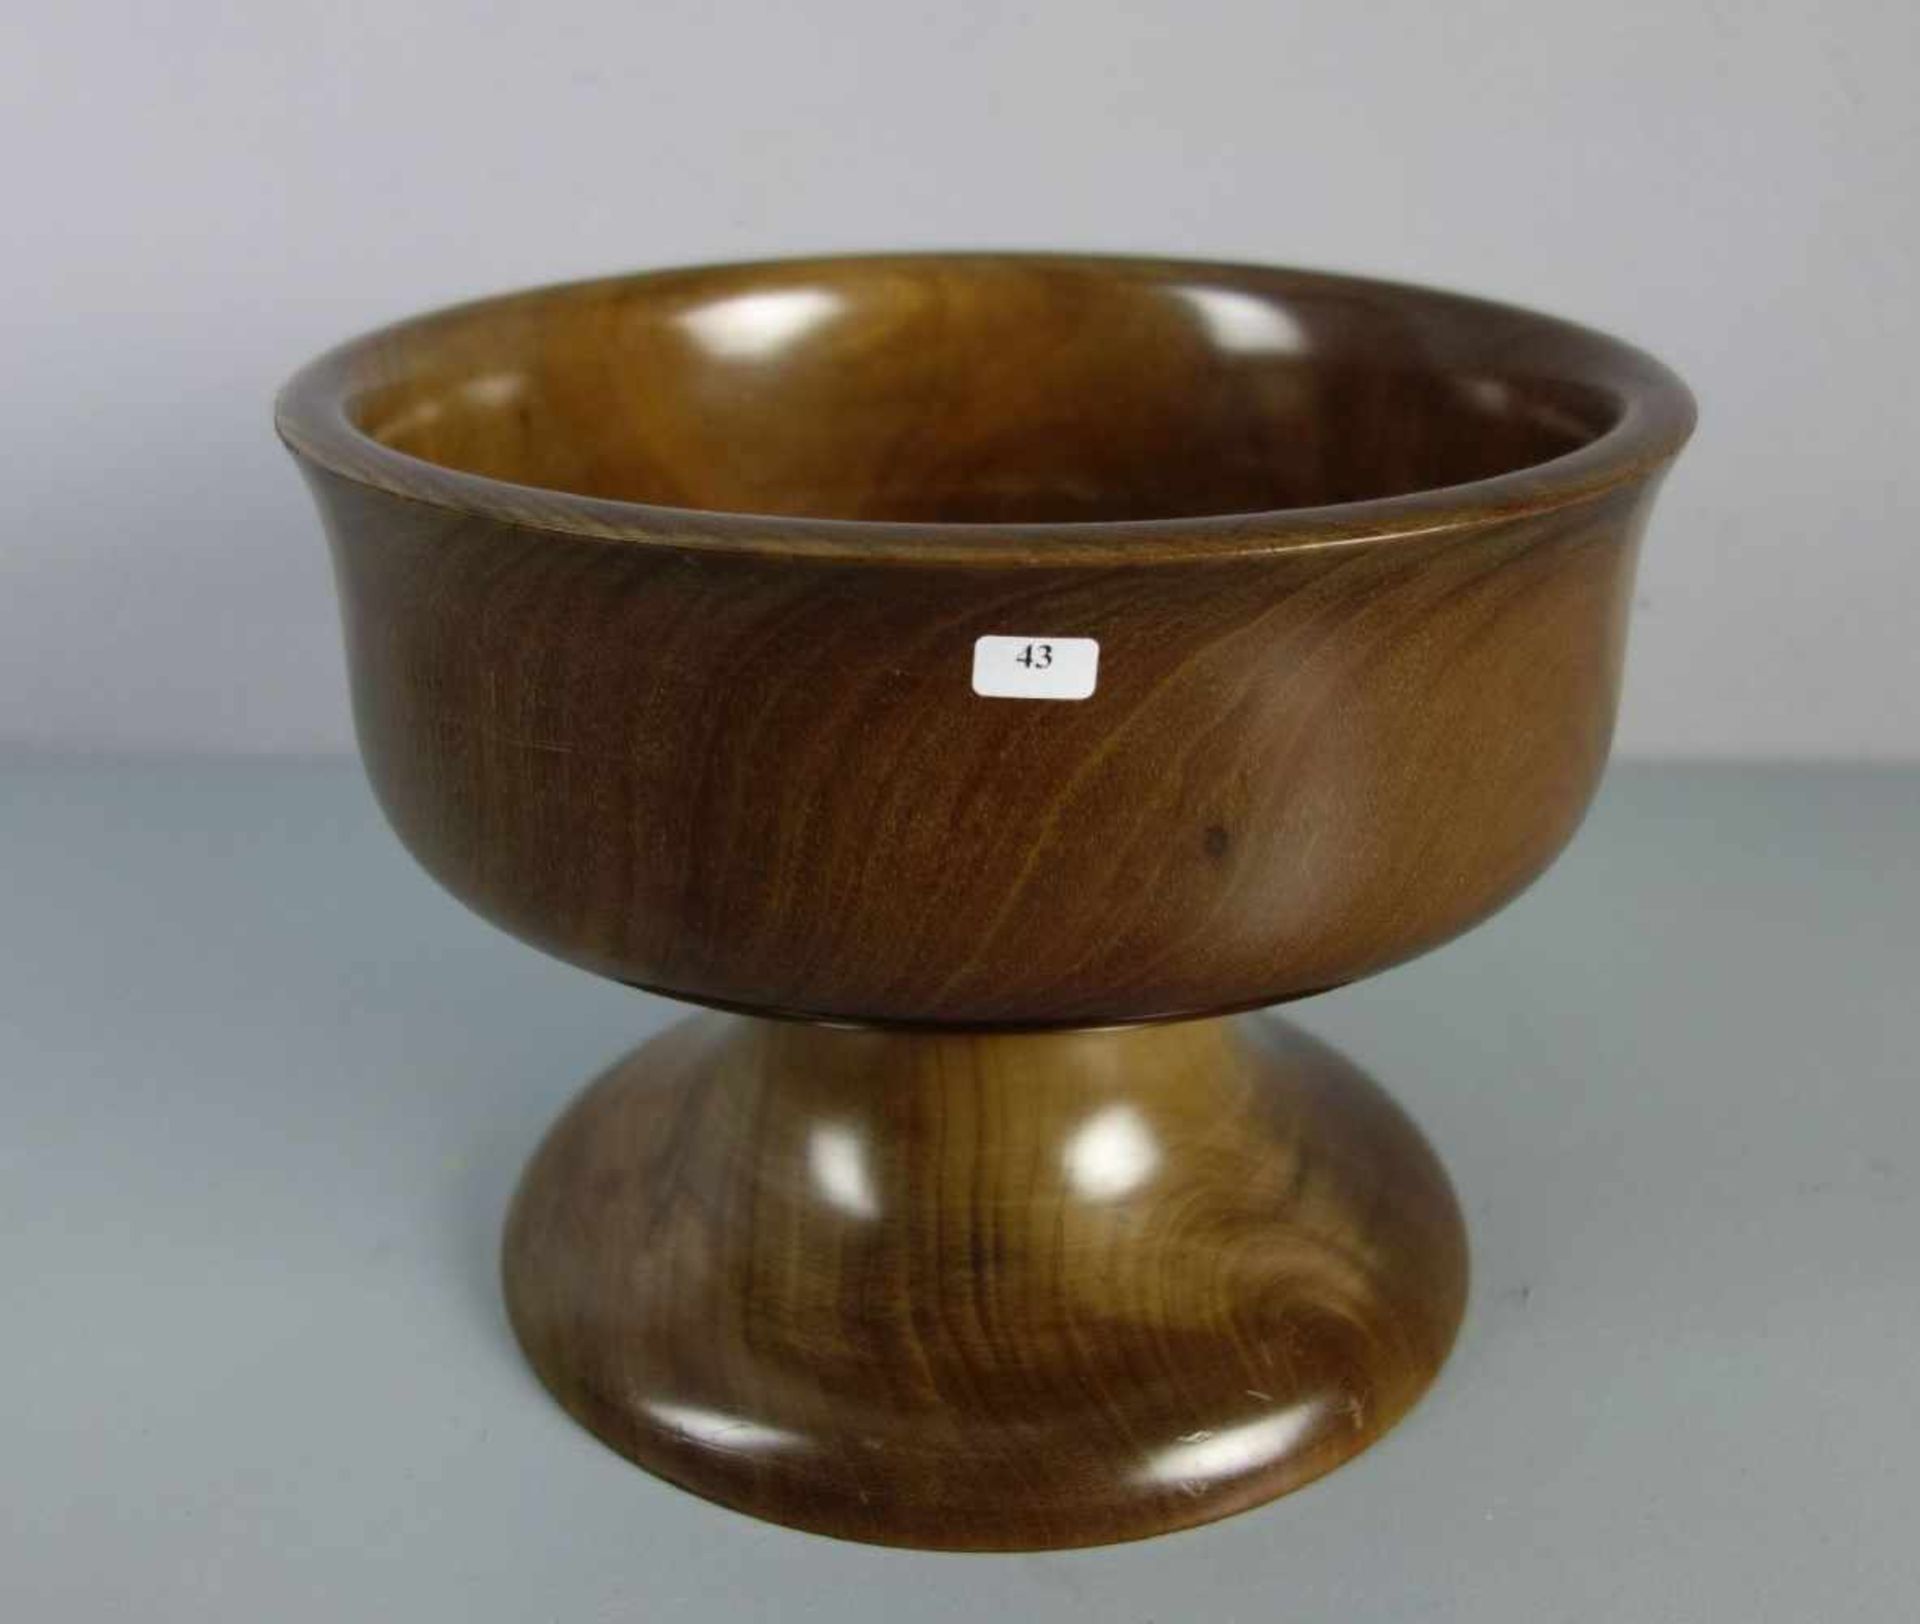 SCHALE / FUSSSCHALE / bowl on a stand, Mahagoni, aus einem Stück gedrechselt. Rundstand mit